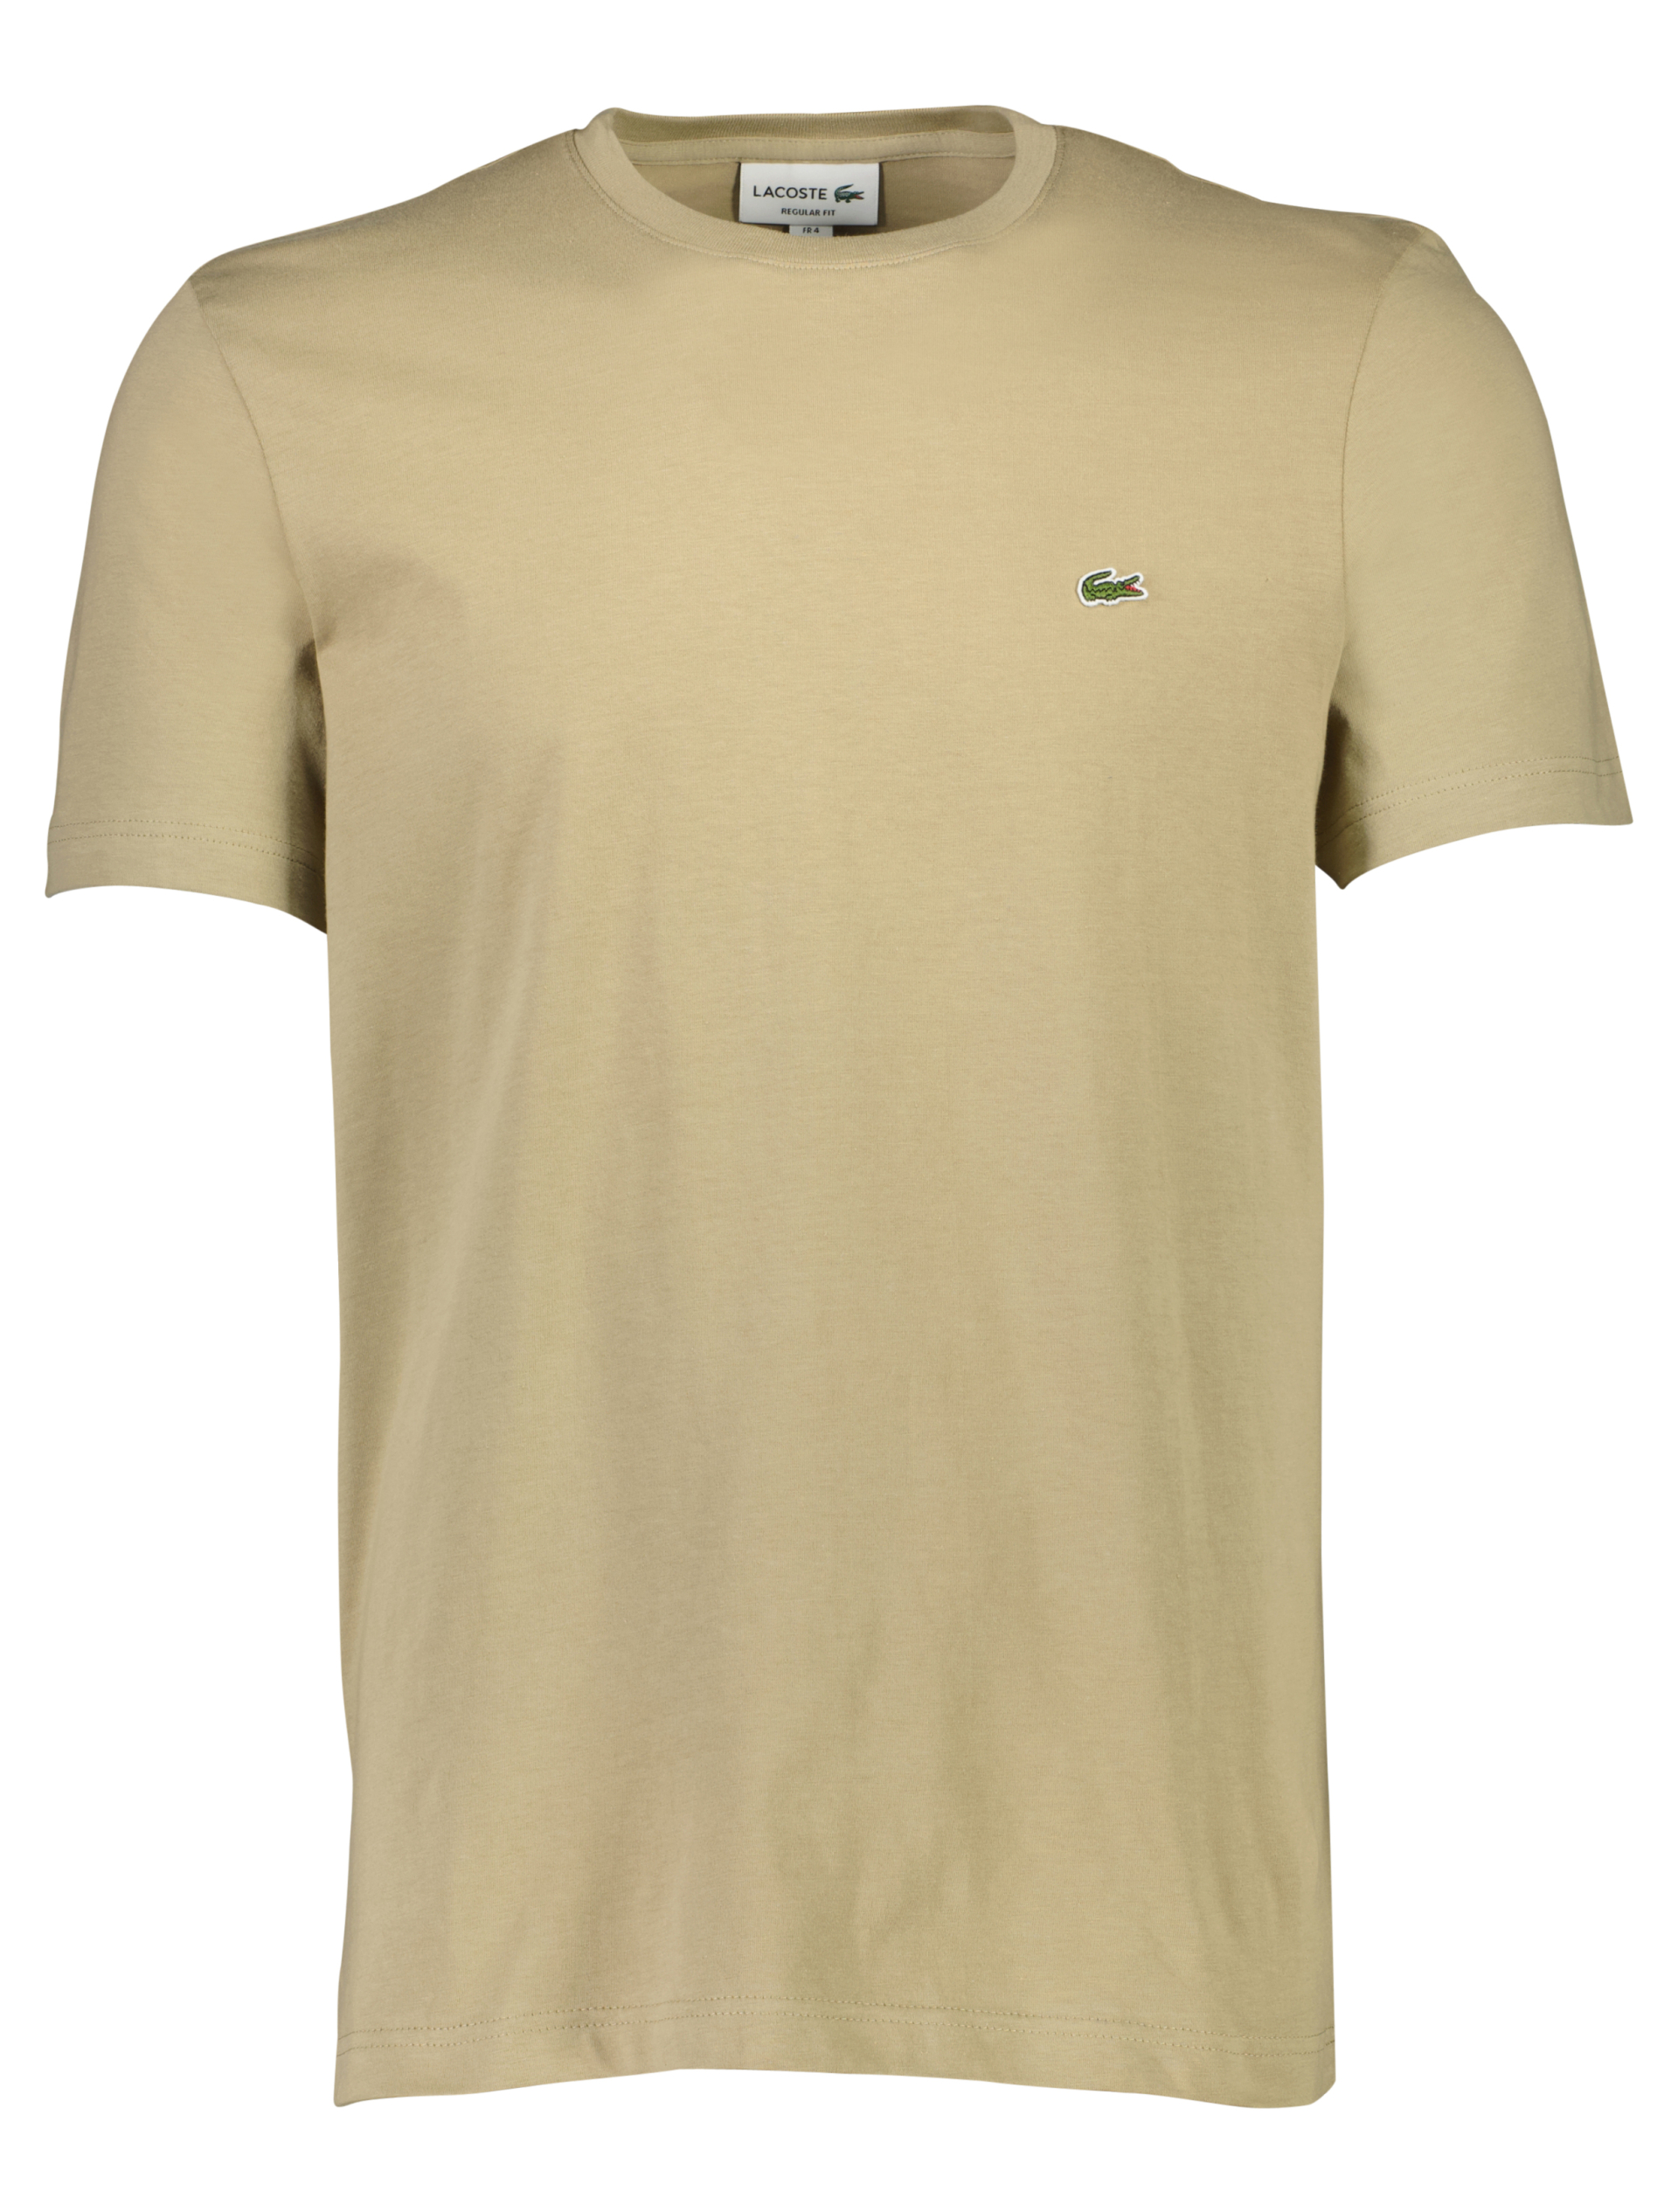 Lacoste T-shirt sand / cb8 lion